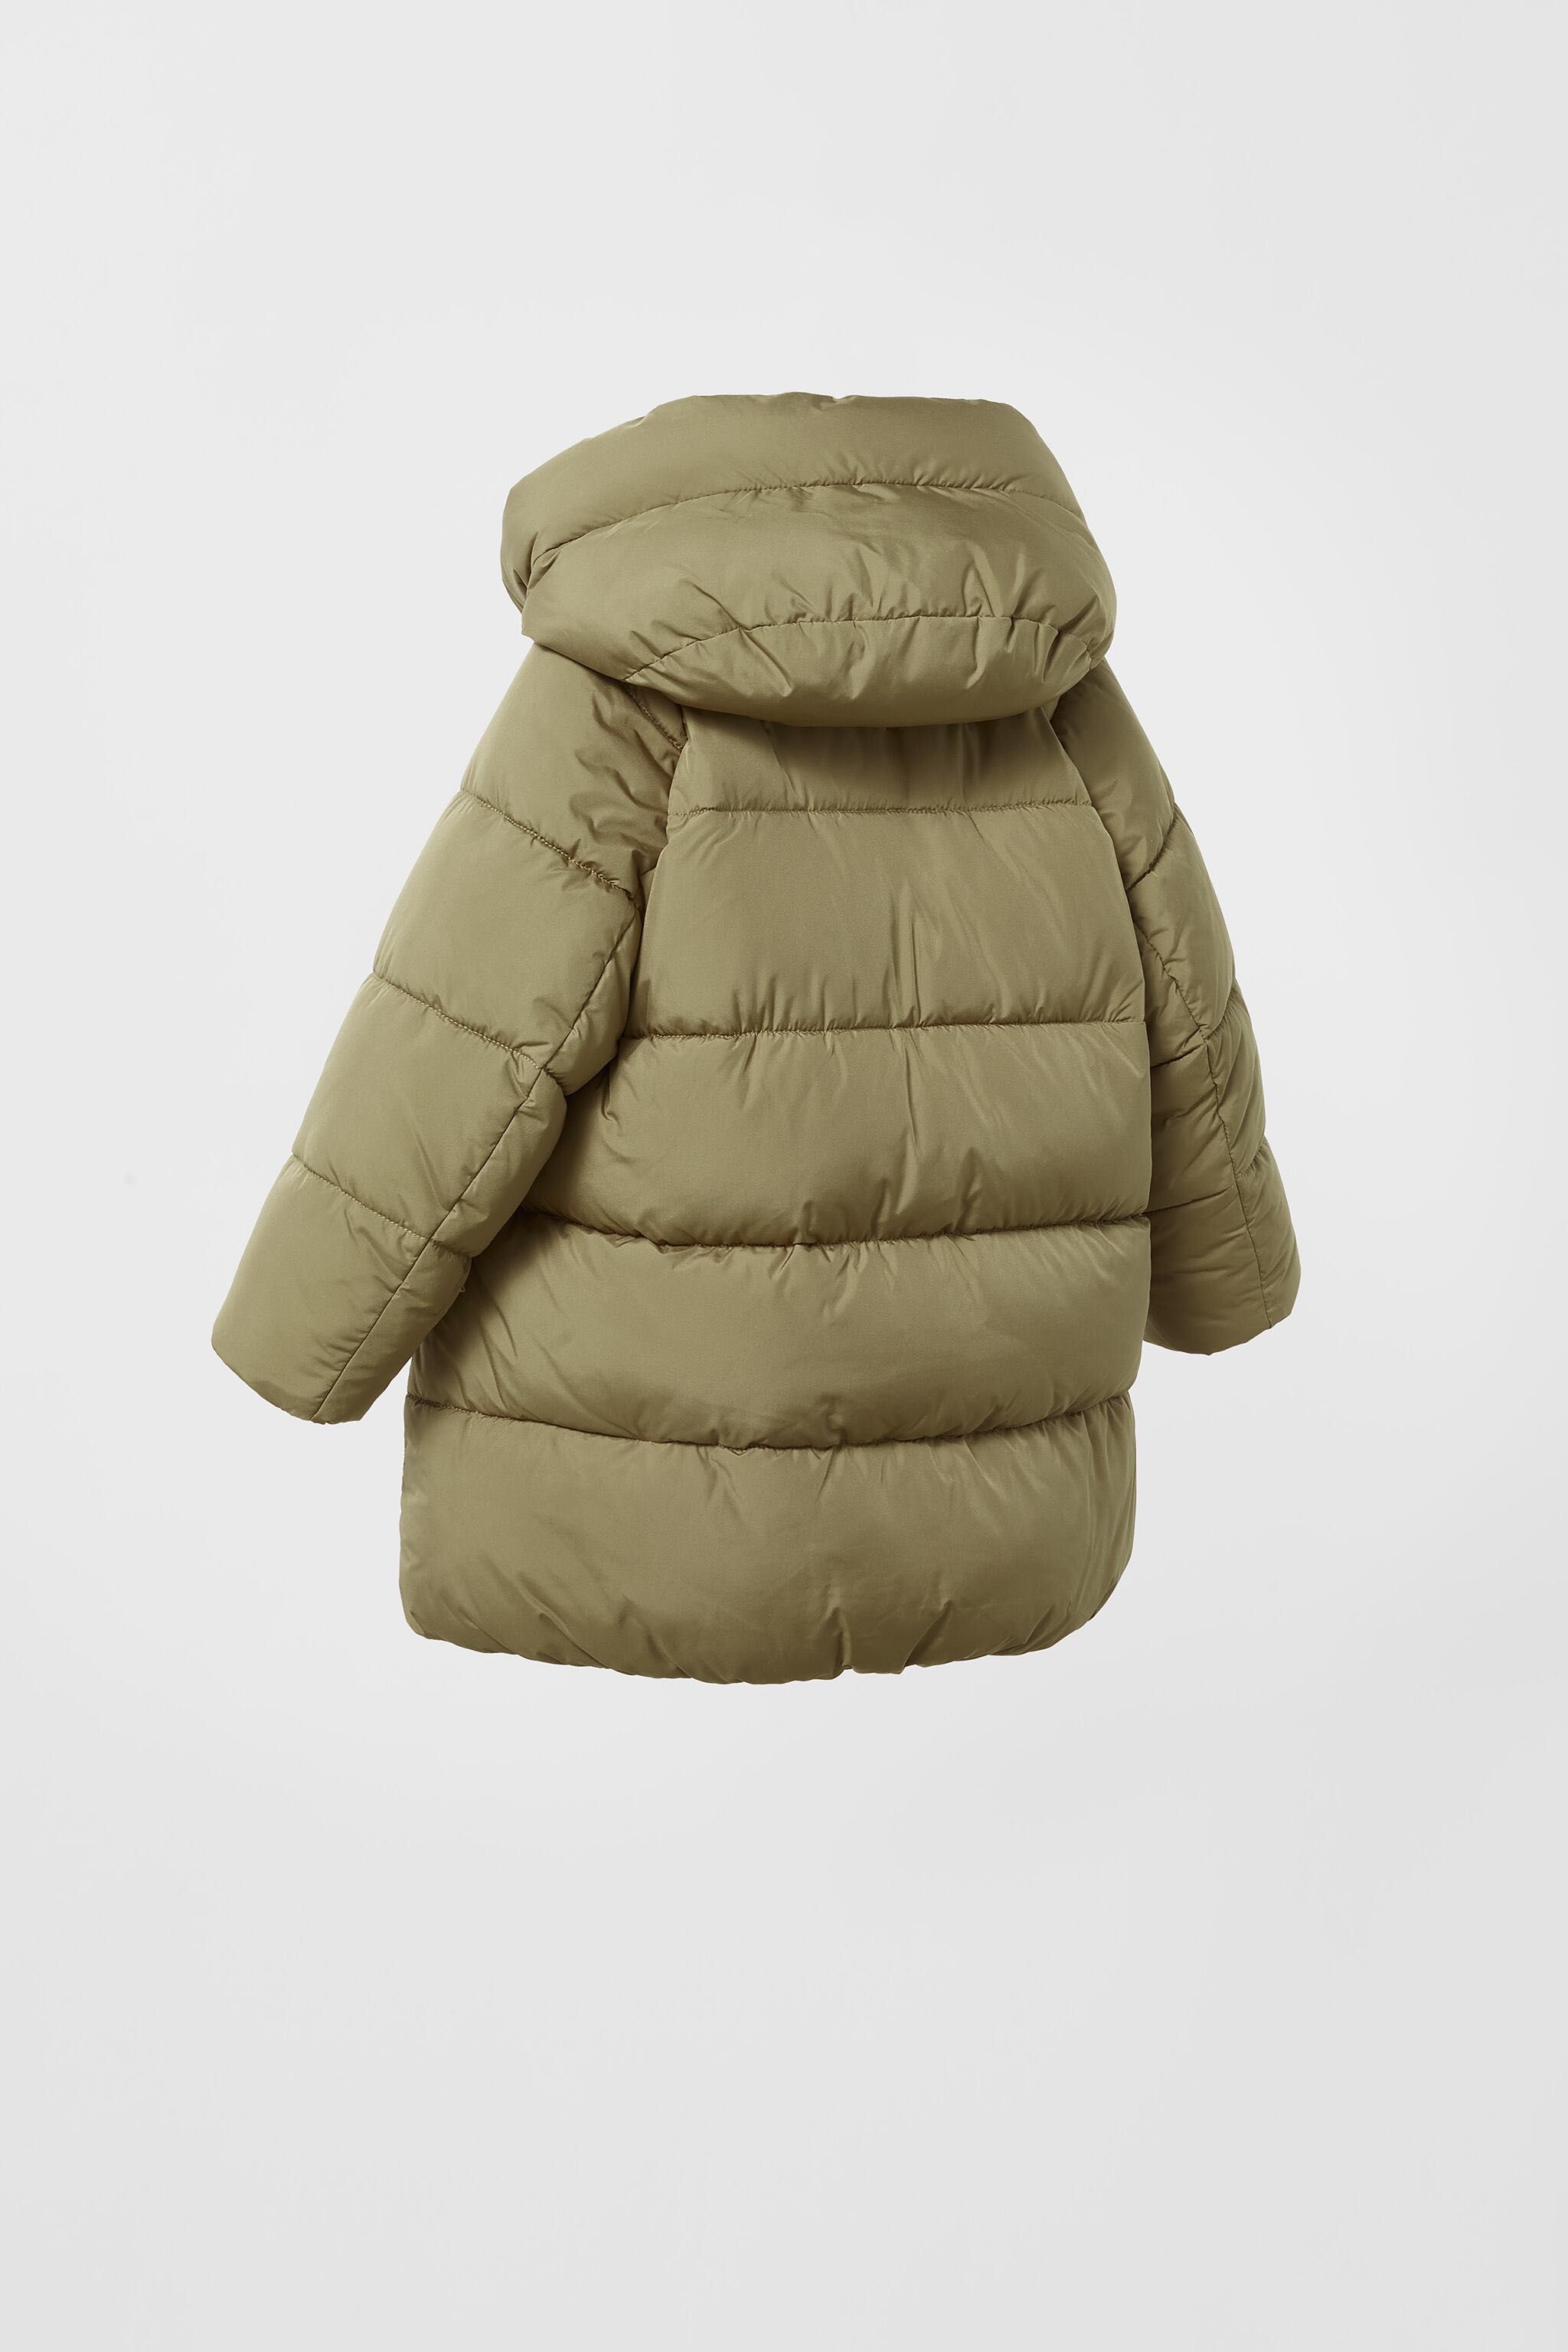 Куртка зимова зимняя курточка пуховик пальто Zara  128 7 8 хаки хакі